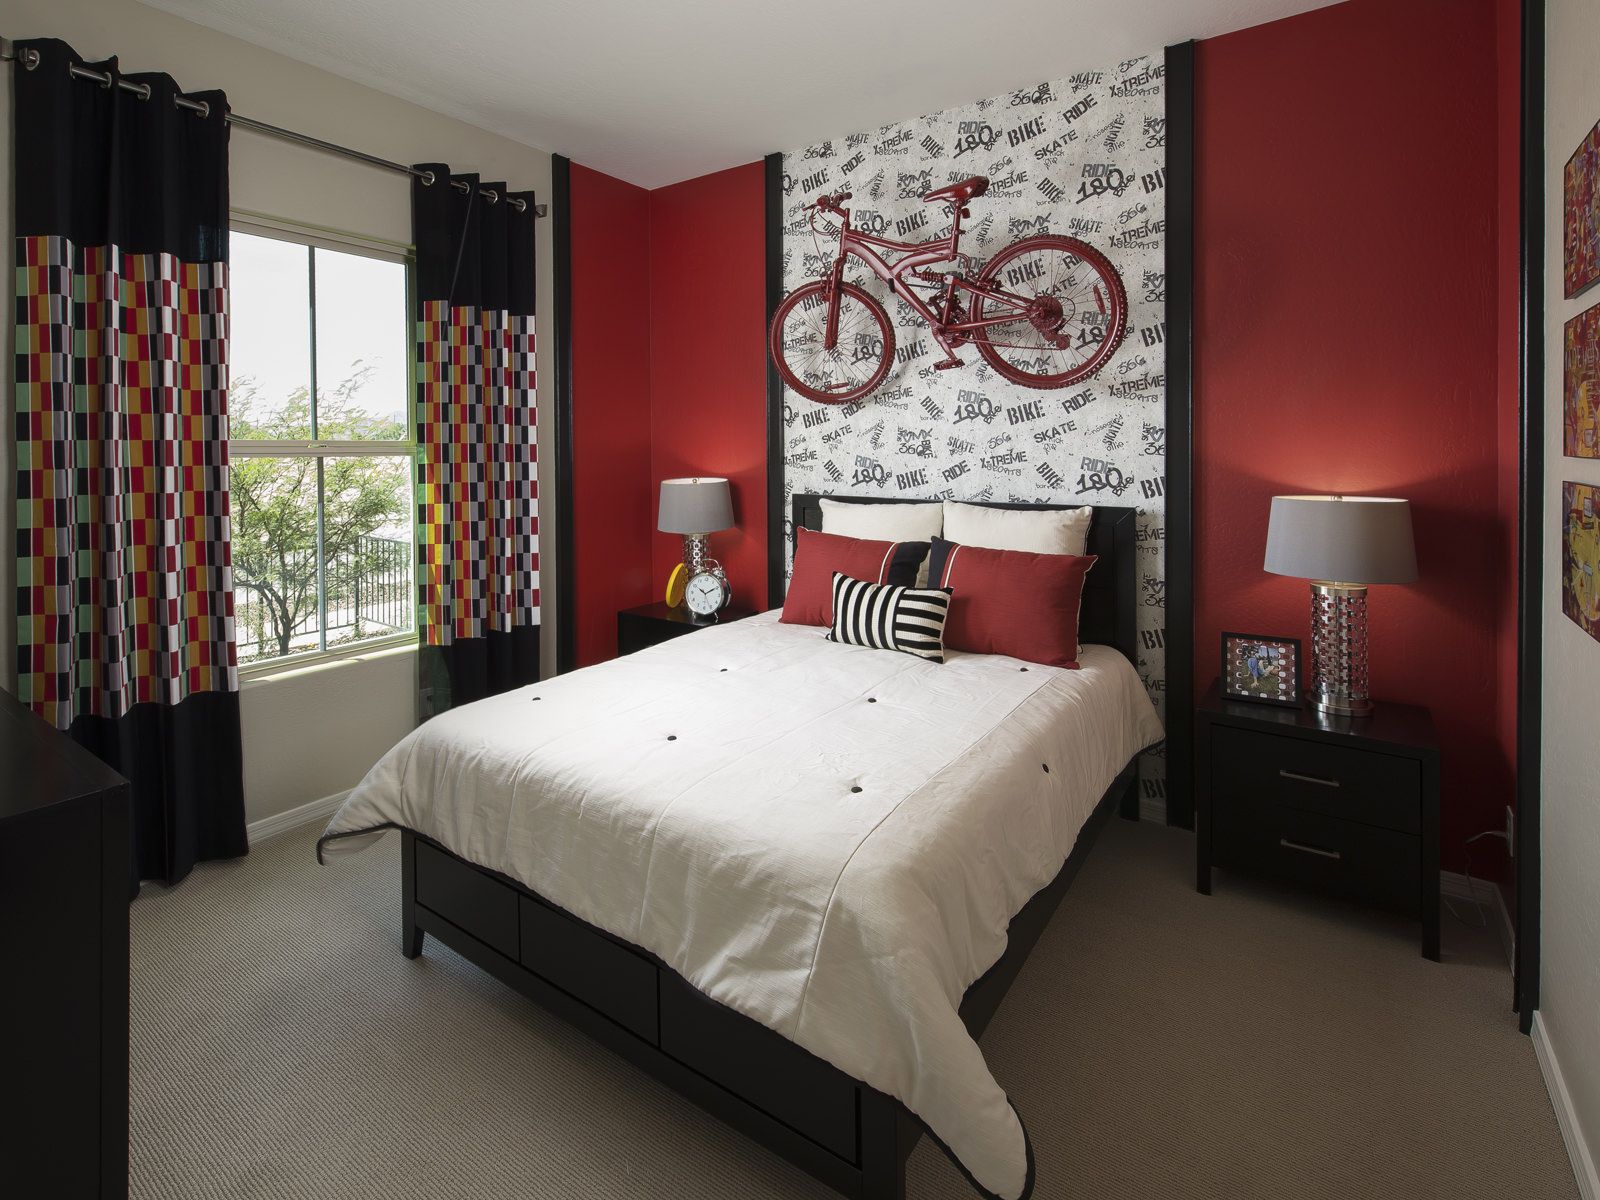 Красно-белый интерьер спальни, велосипед над кроватью, красные стены